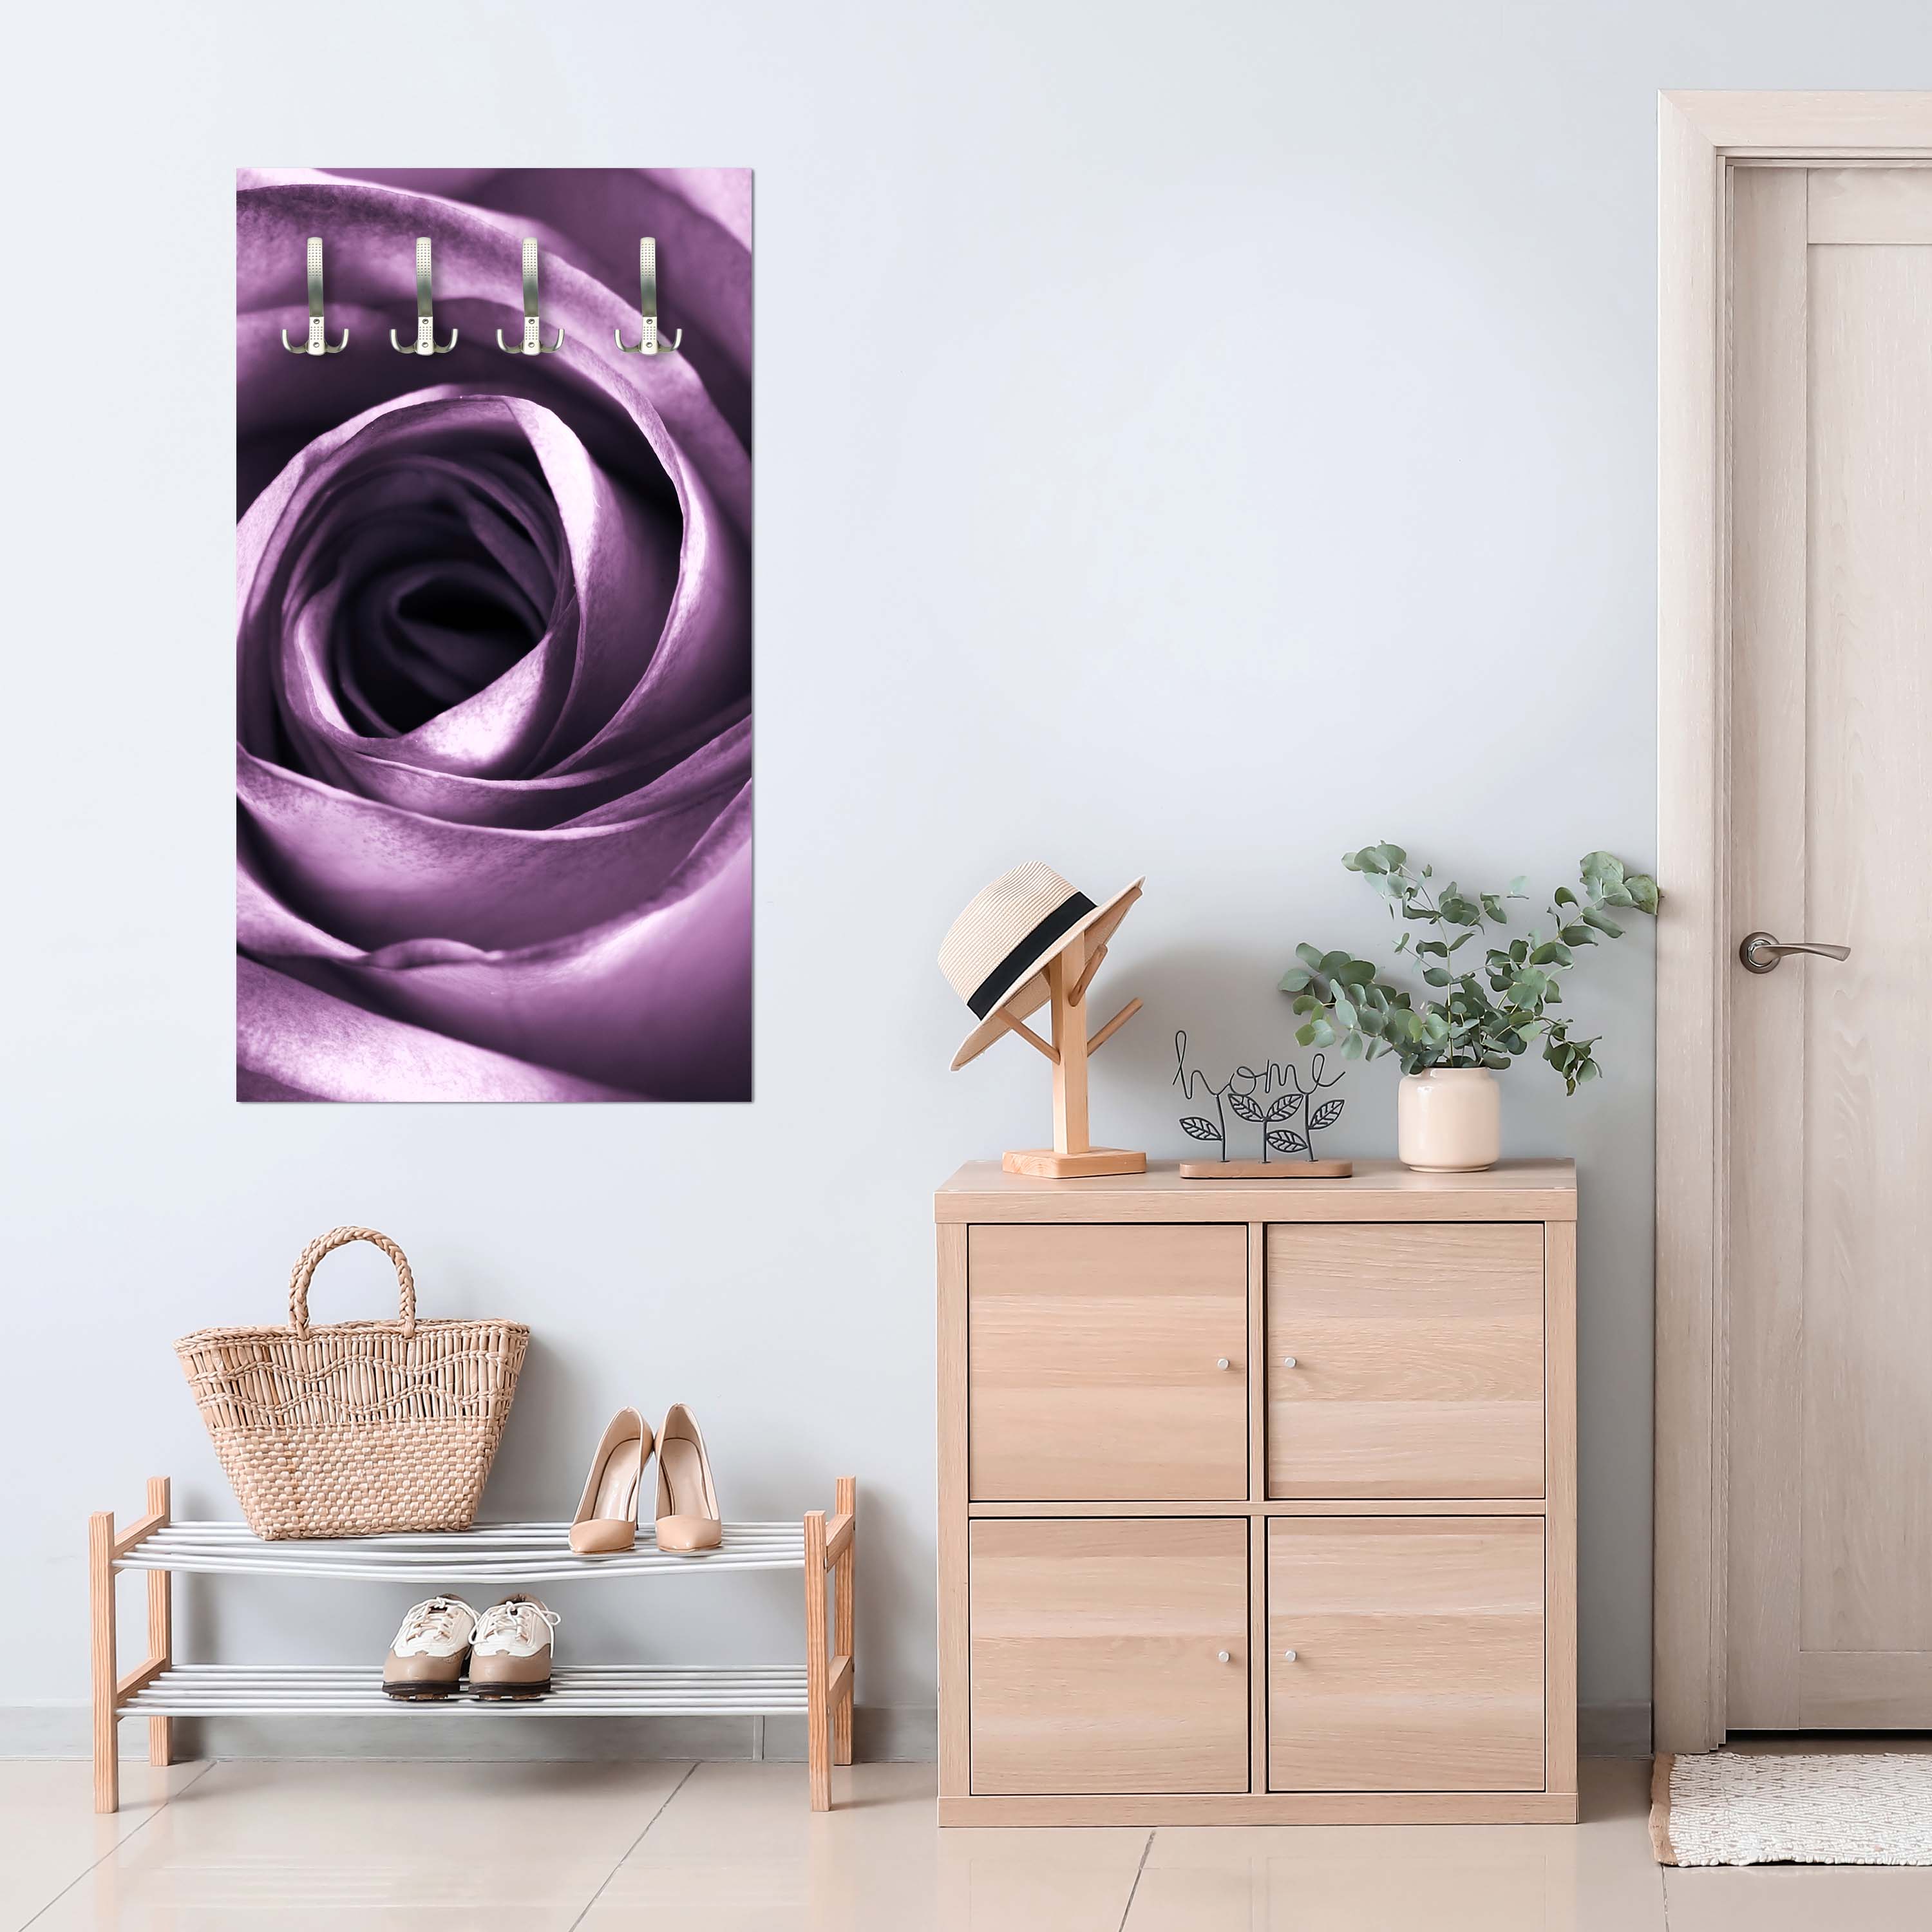 Garderobe violette Rose M0051 entdecken - Bild 3